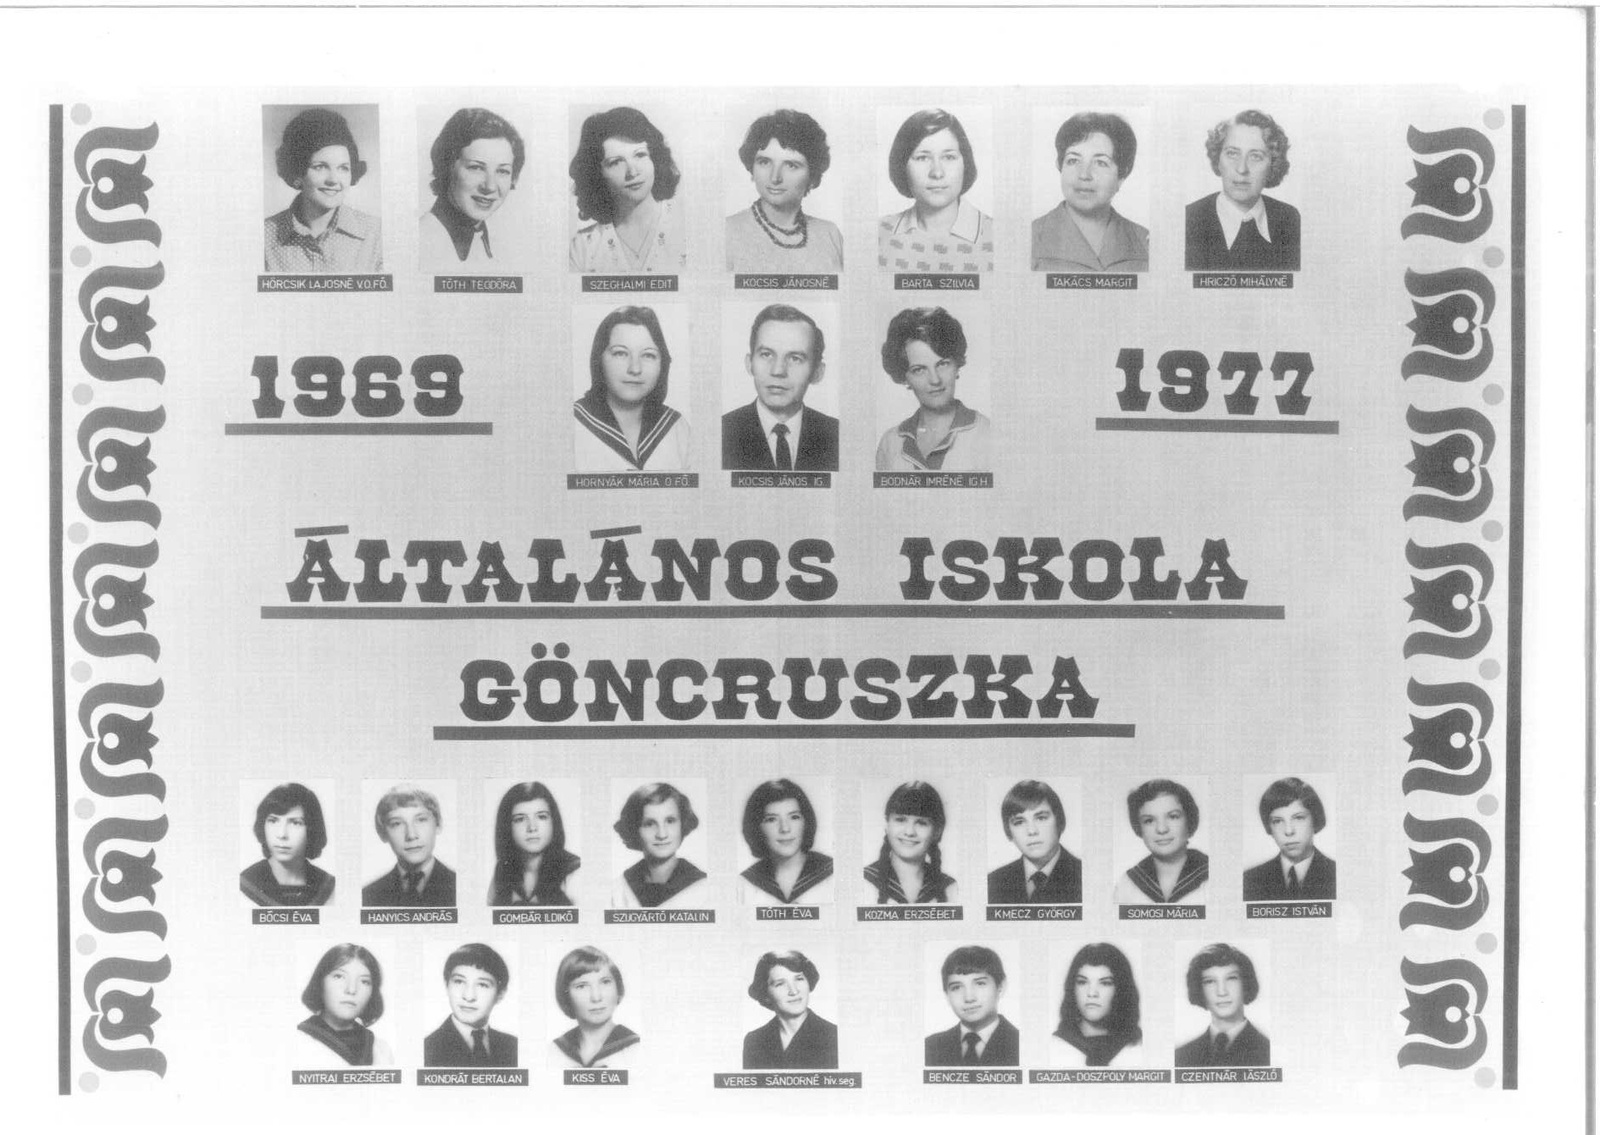 Általános Iskola Göncruszka 1977.